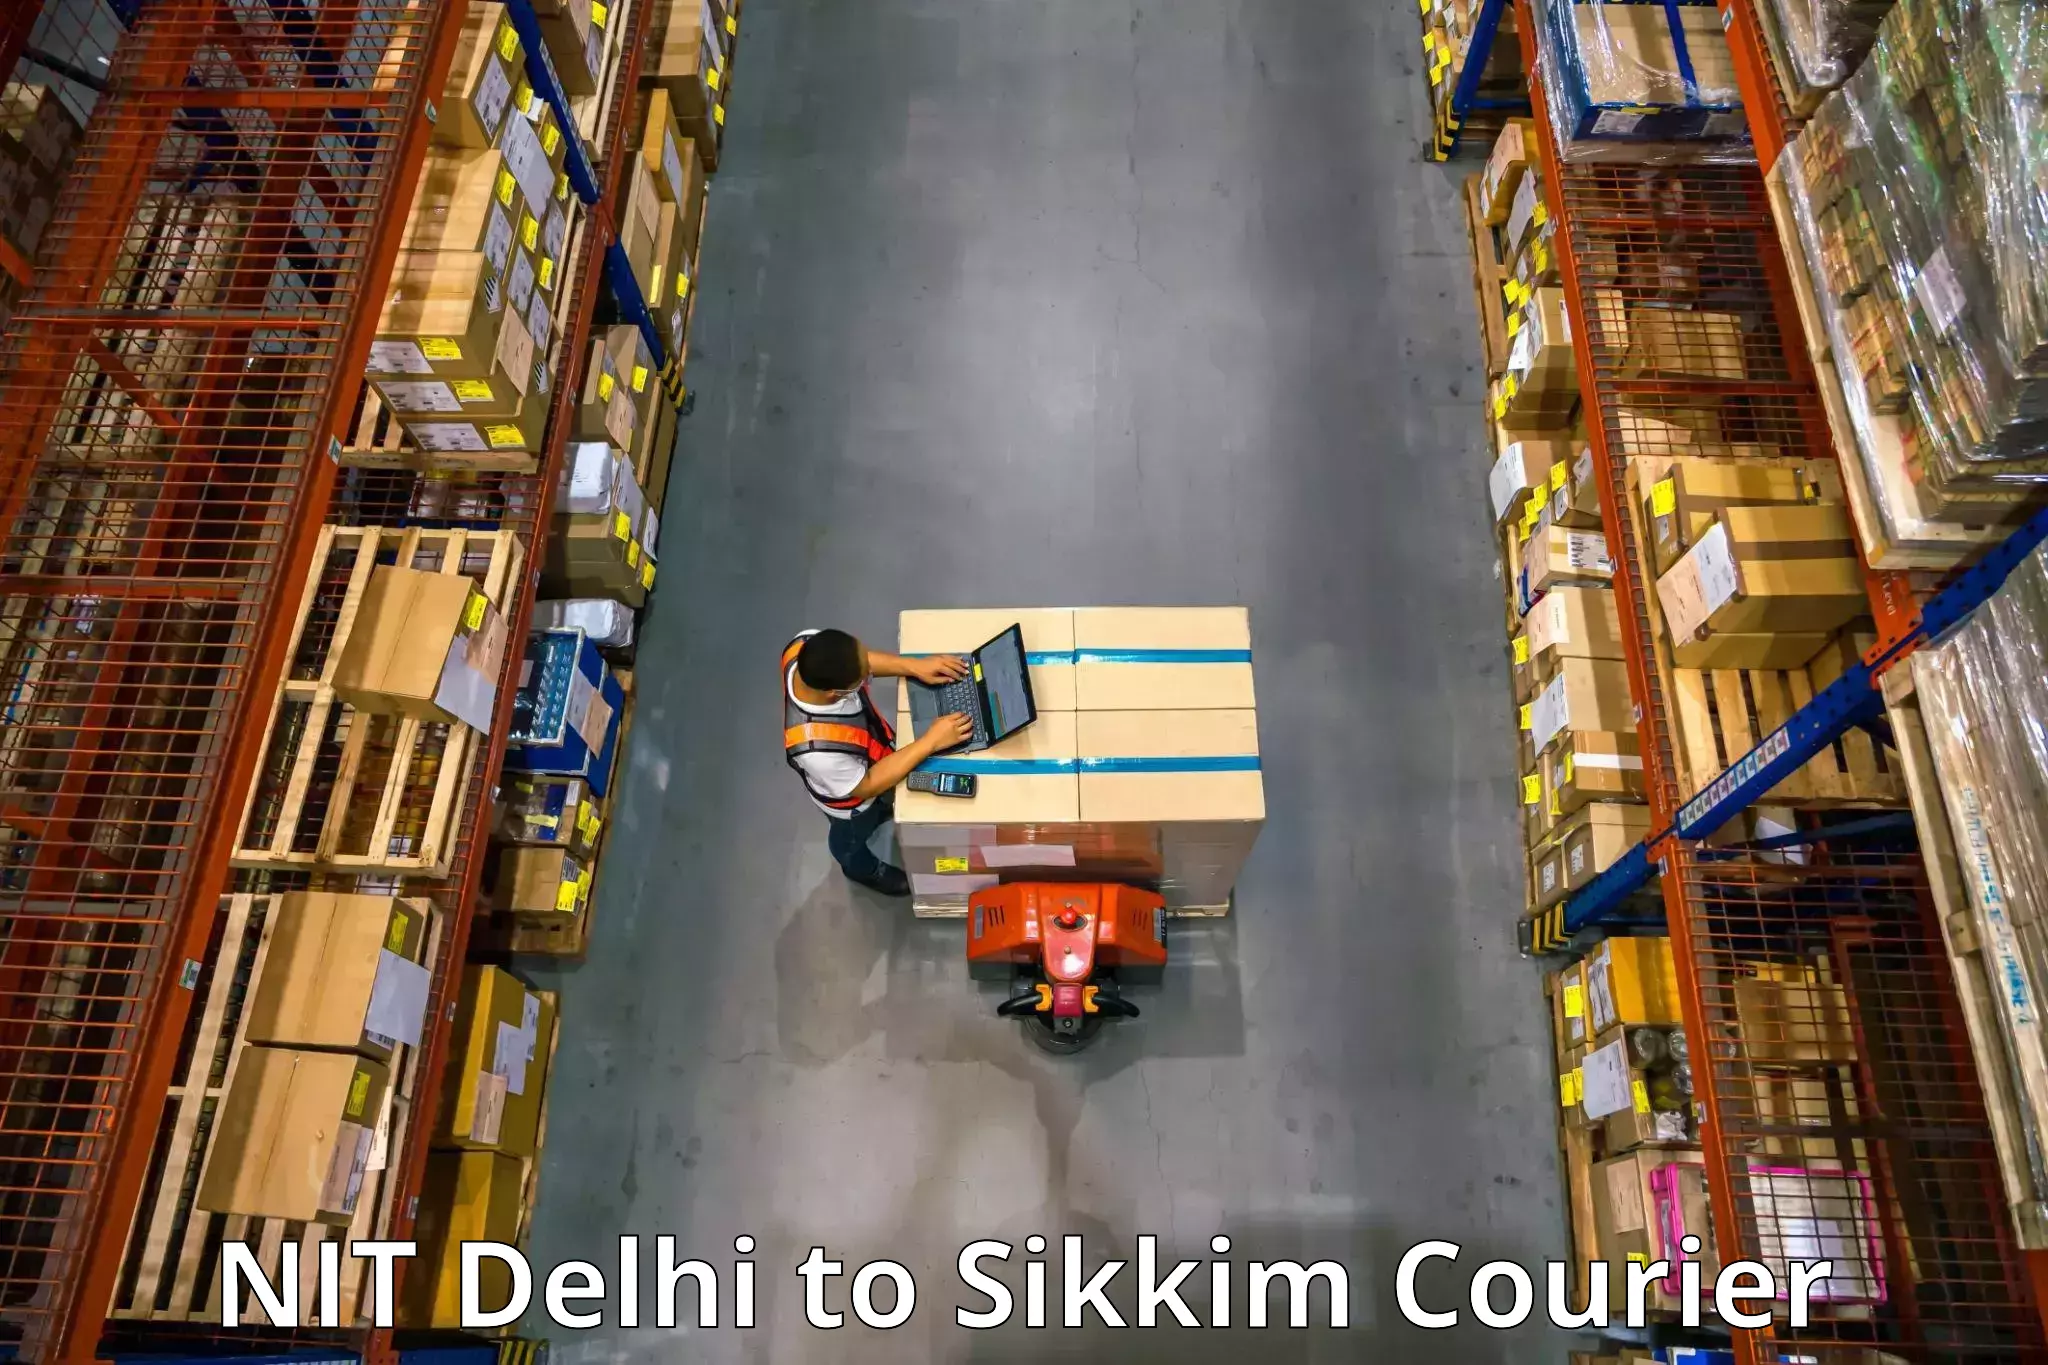 Furniture logistics NIT Delhi to Pelling